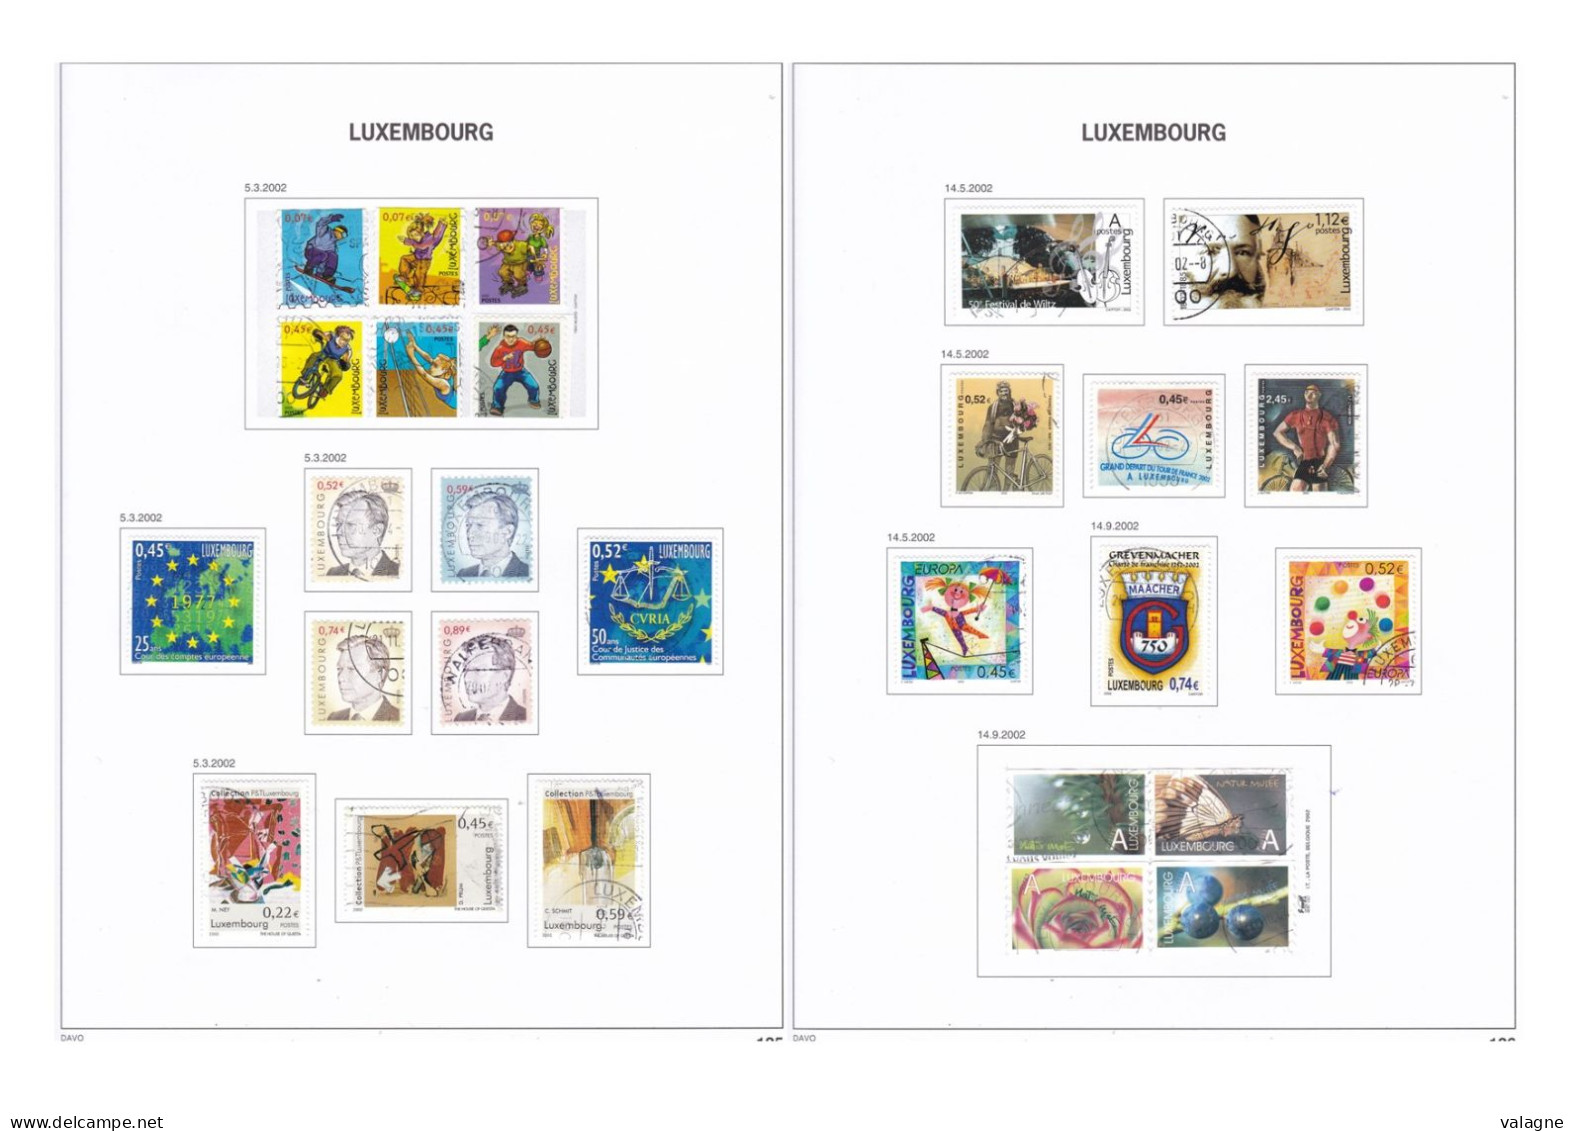 LUXEMBOURG Importante collection à compléter des origines à 2010 dans un album Davo Collection en majorité oblitéré